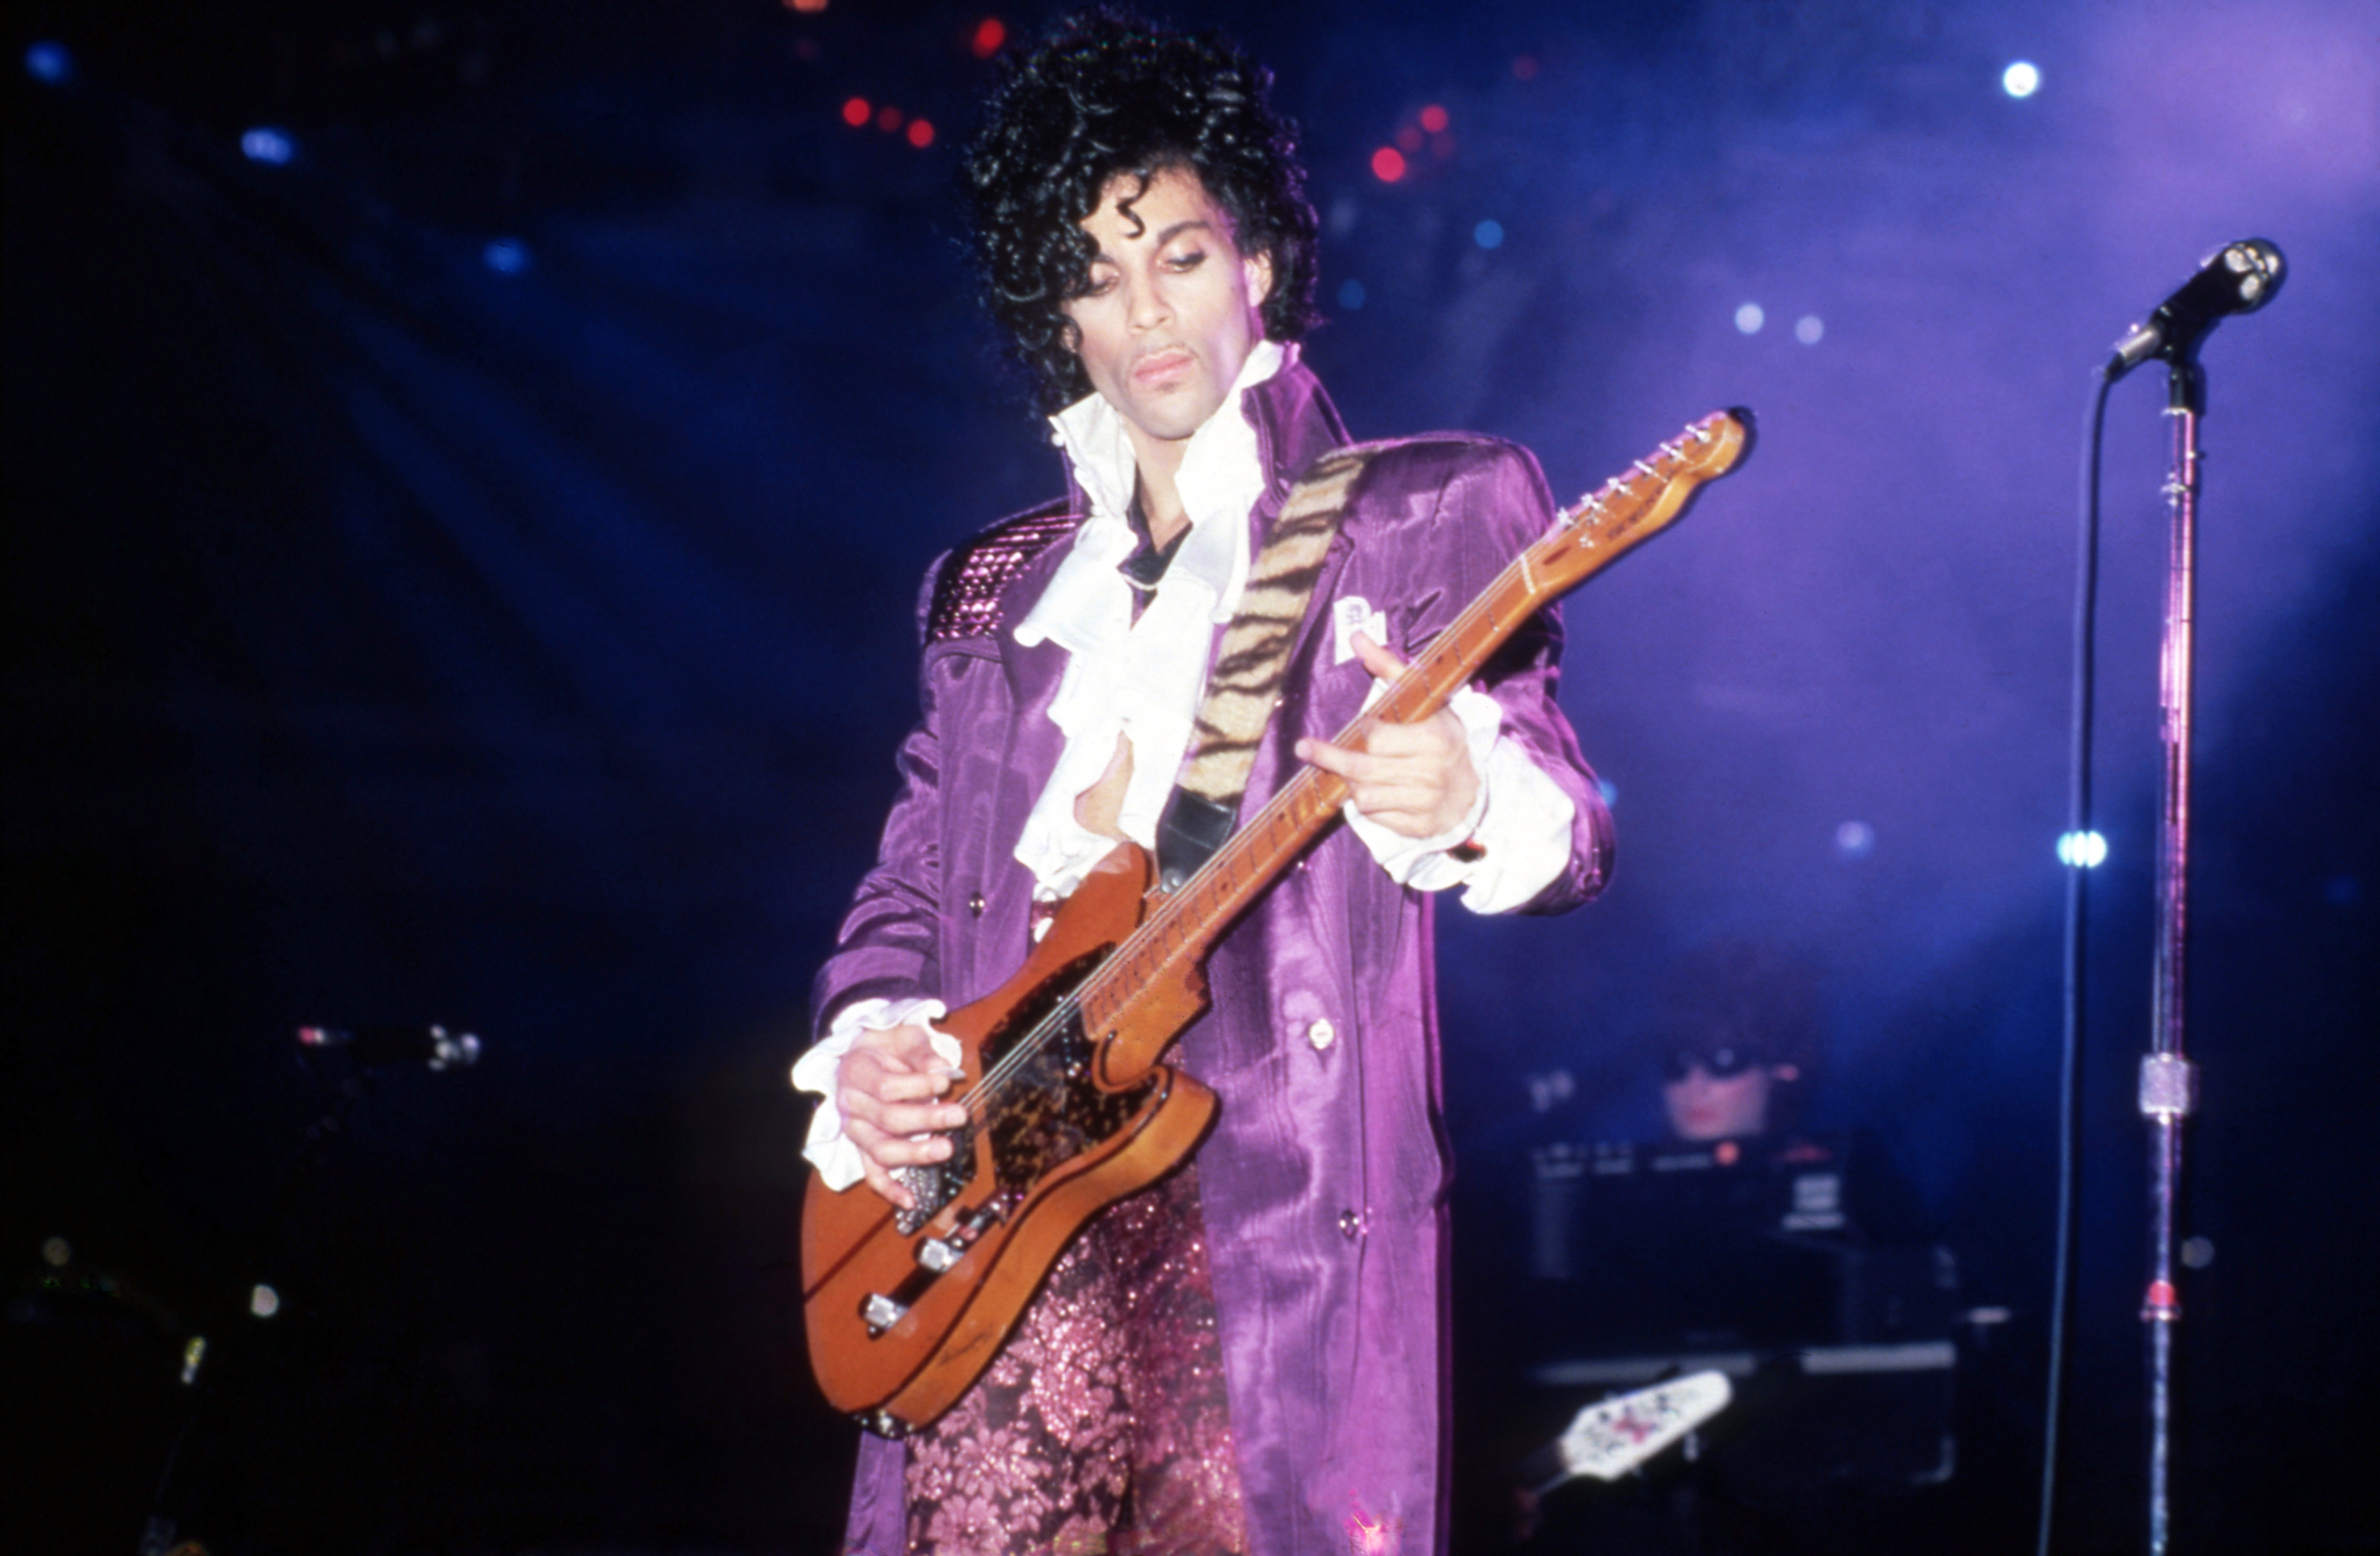 Prince se produit pendant la tournée "Purple Rain" le 4 novembre 1984 à Detroit, Michigan | Source : Getty Images